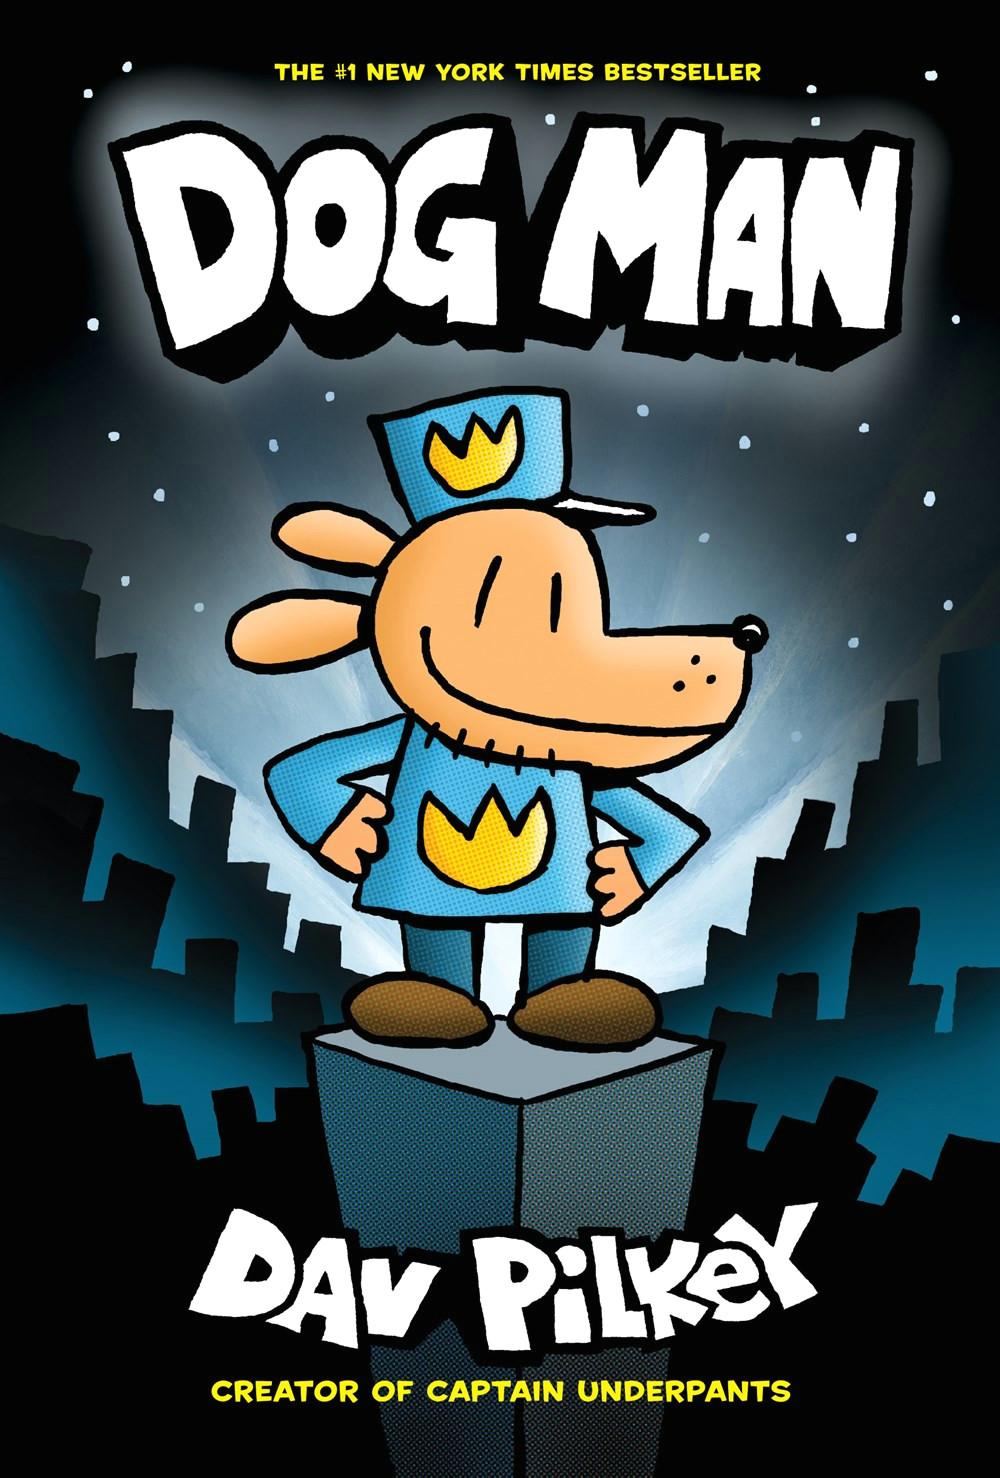 Drawing Dog Man Characters Dog Man